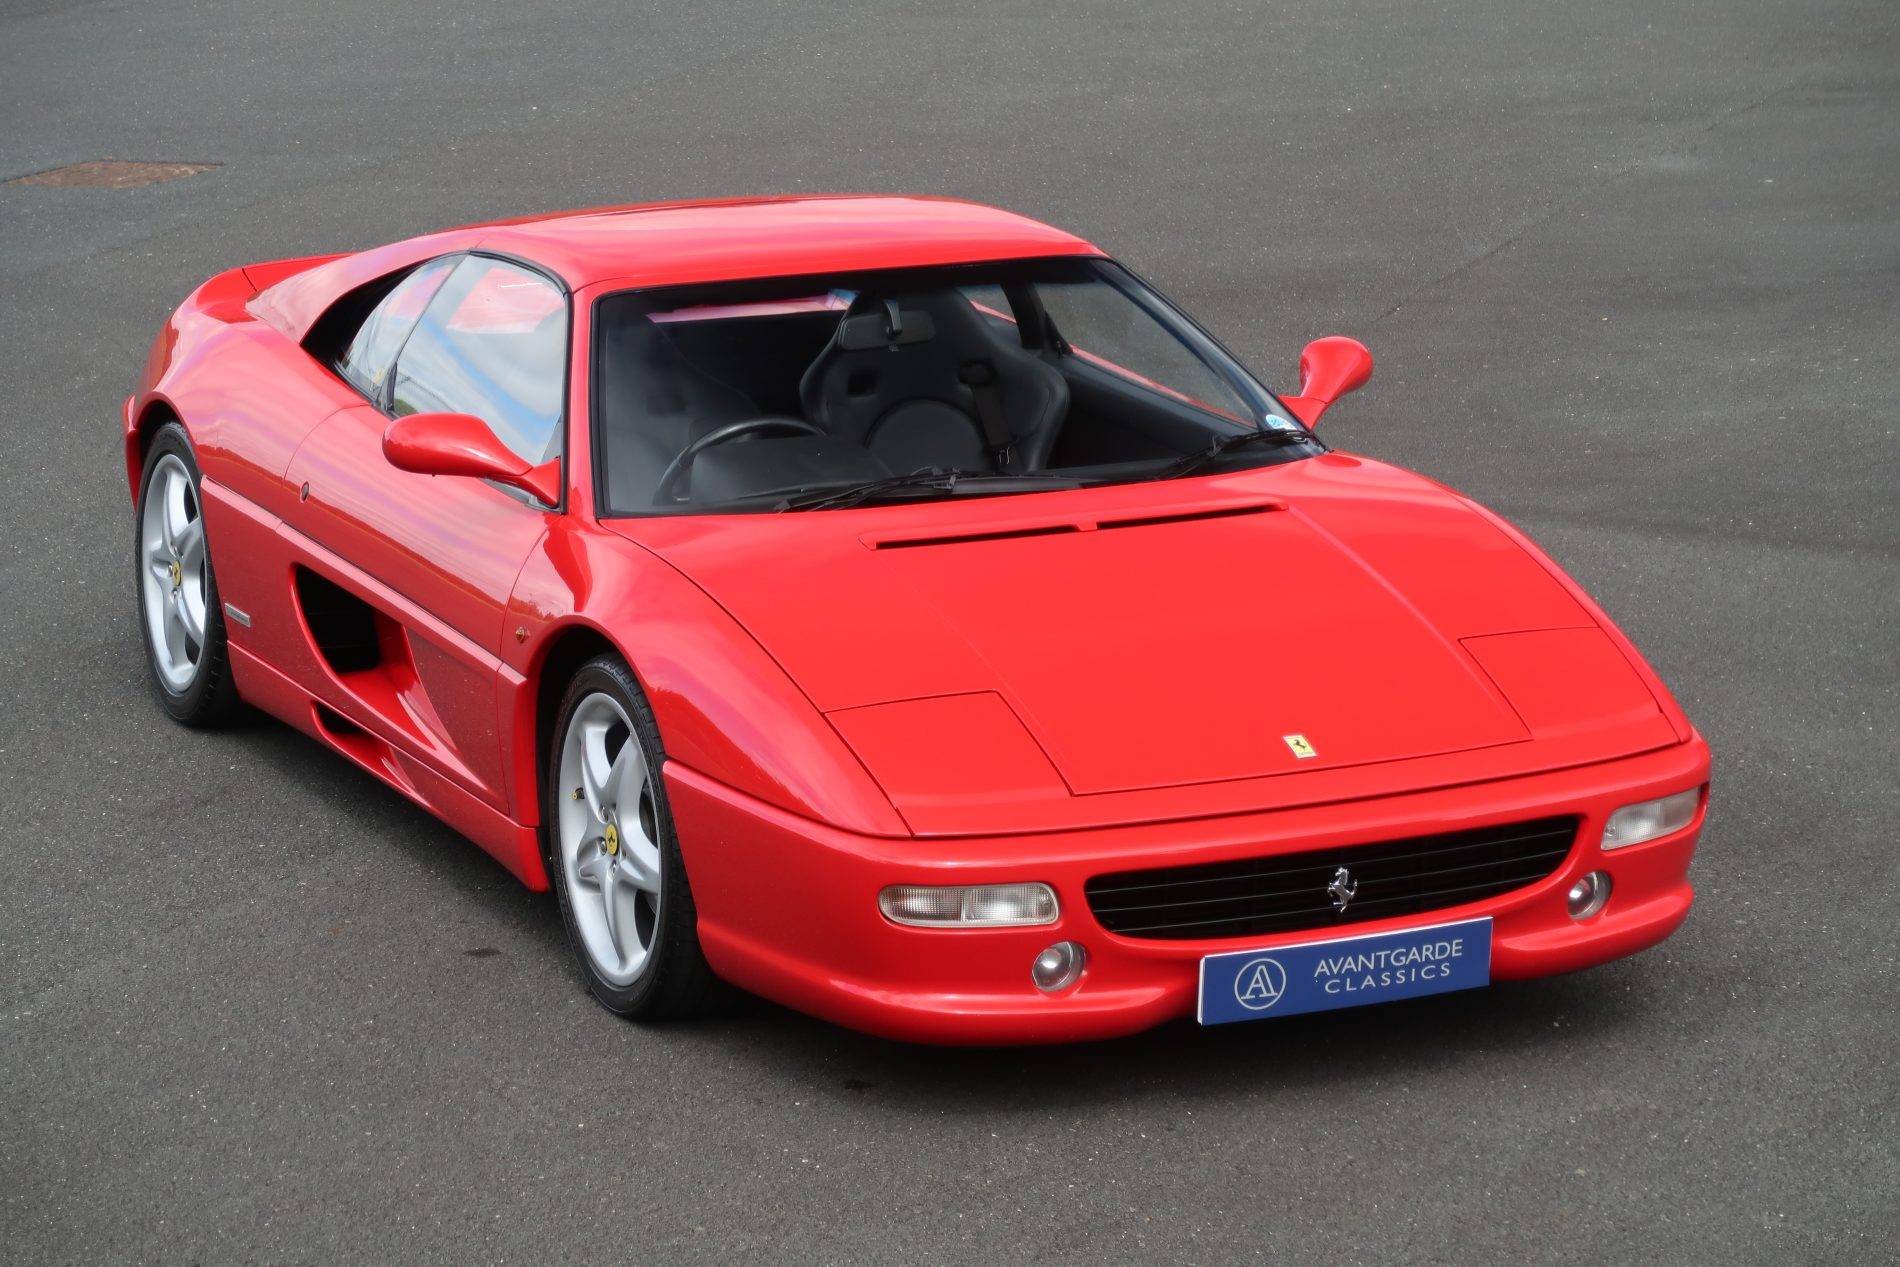 Ferrari F 355 GTS (1996) in vendita a 146.599 €